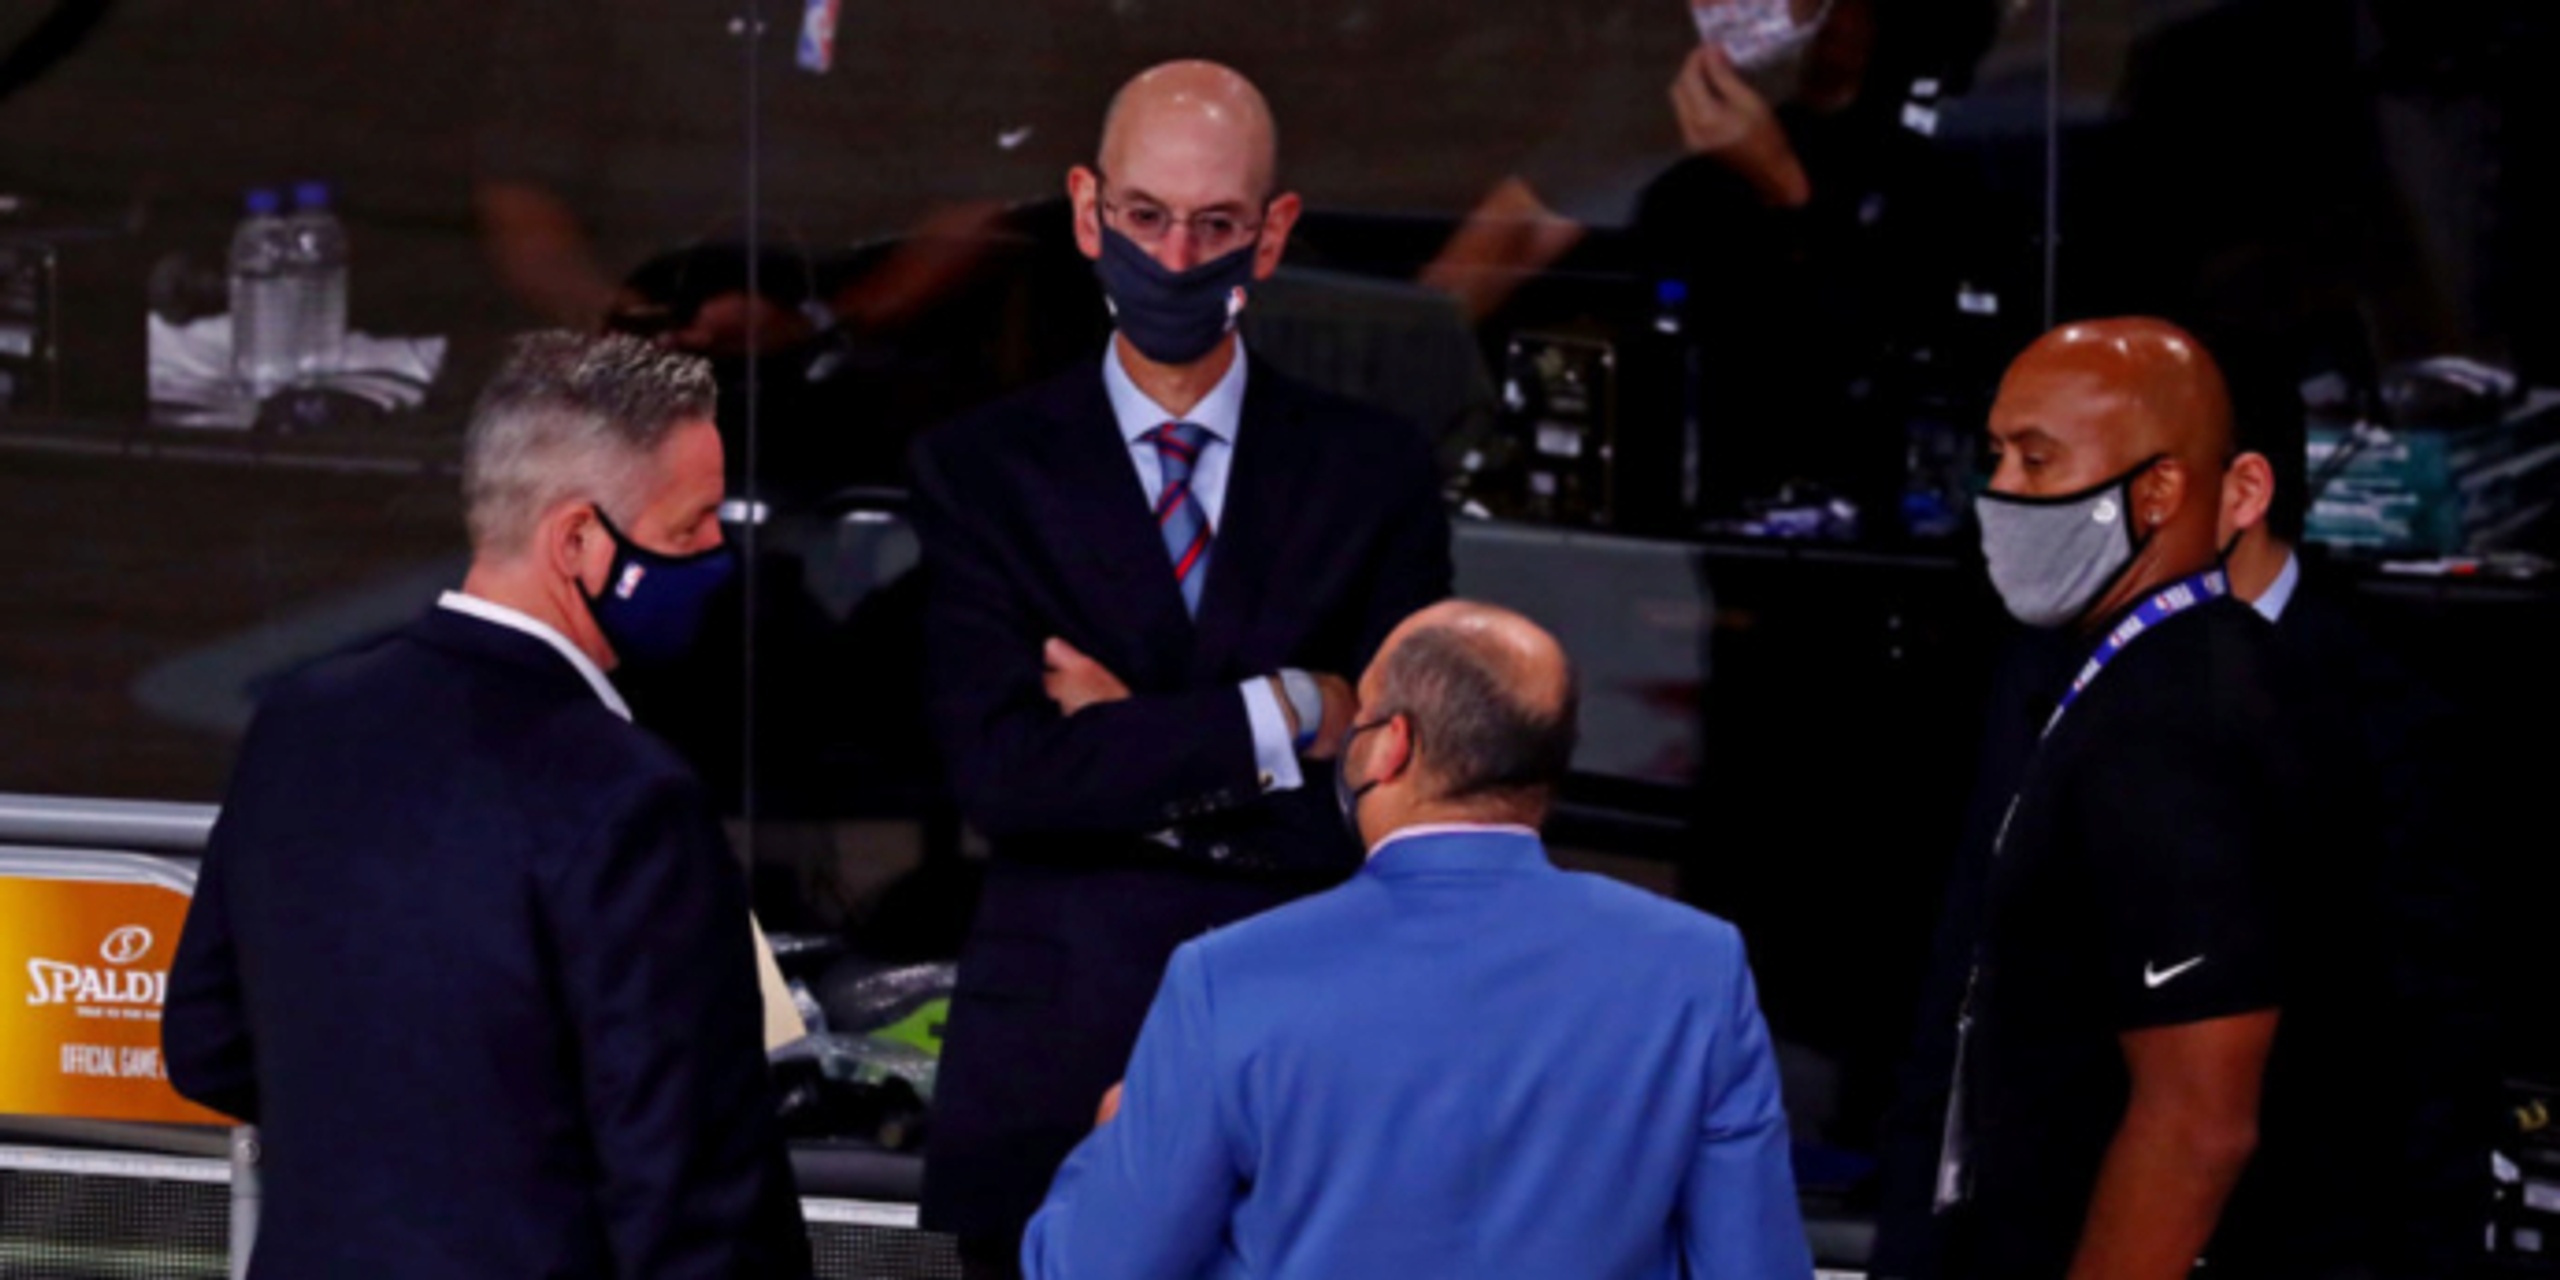 NBA has told teams to be vigilant ahead of Chauvin trial verdict